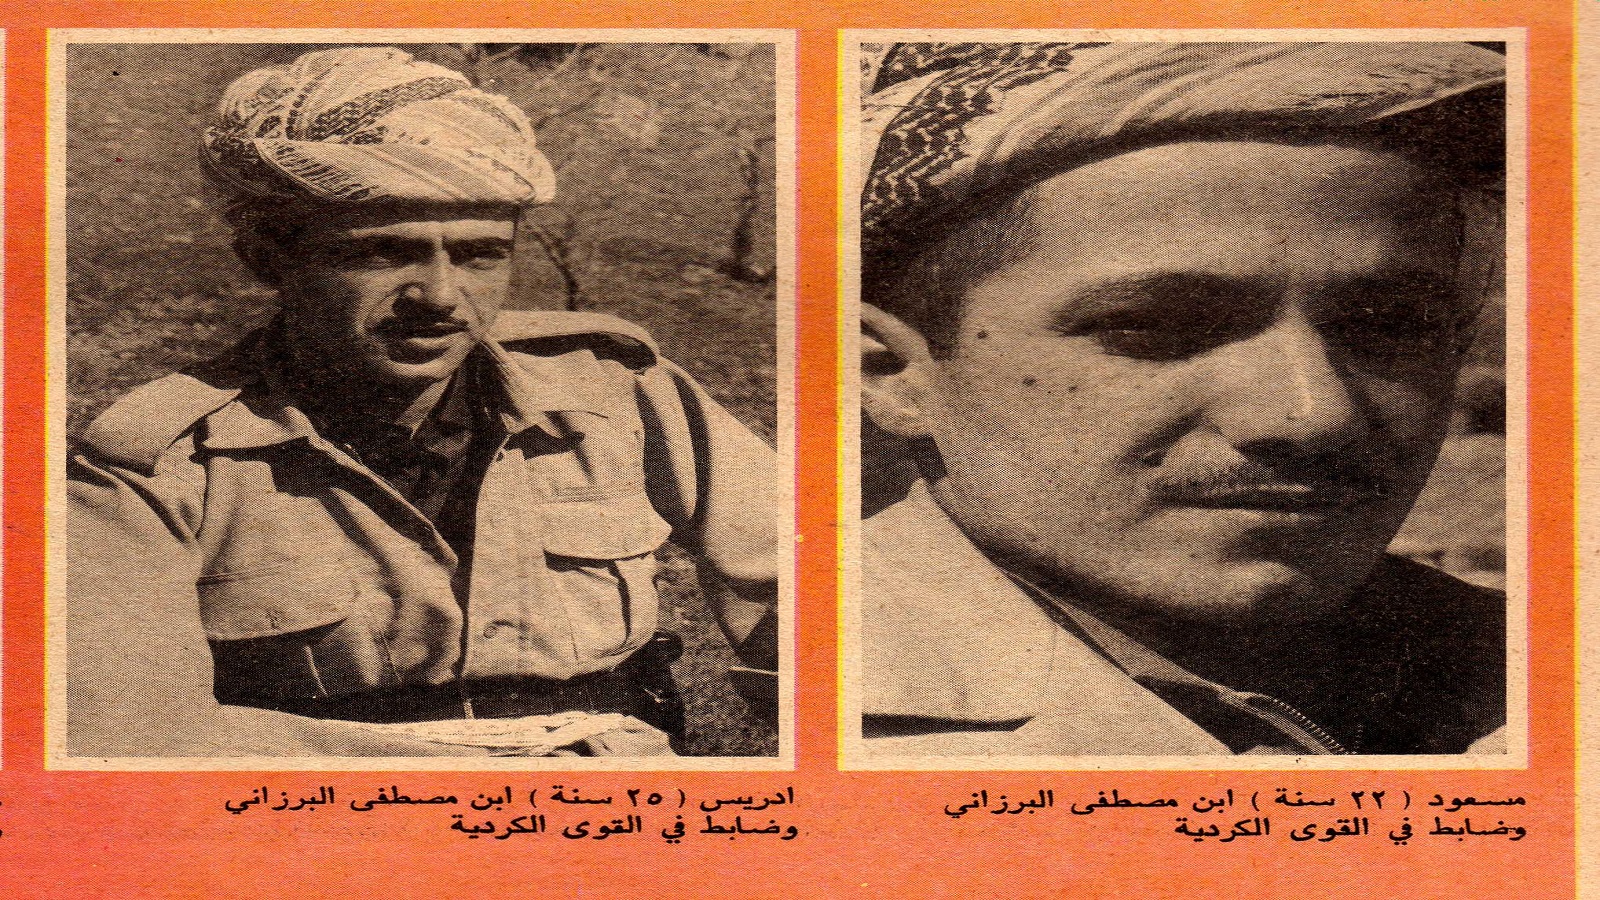 مسعود وإدريس البرزاني في عام 1970.